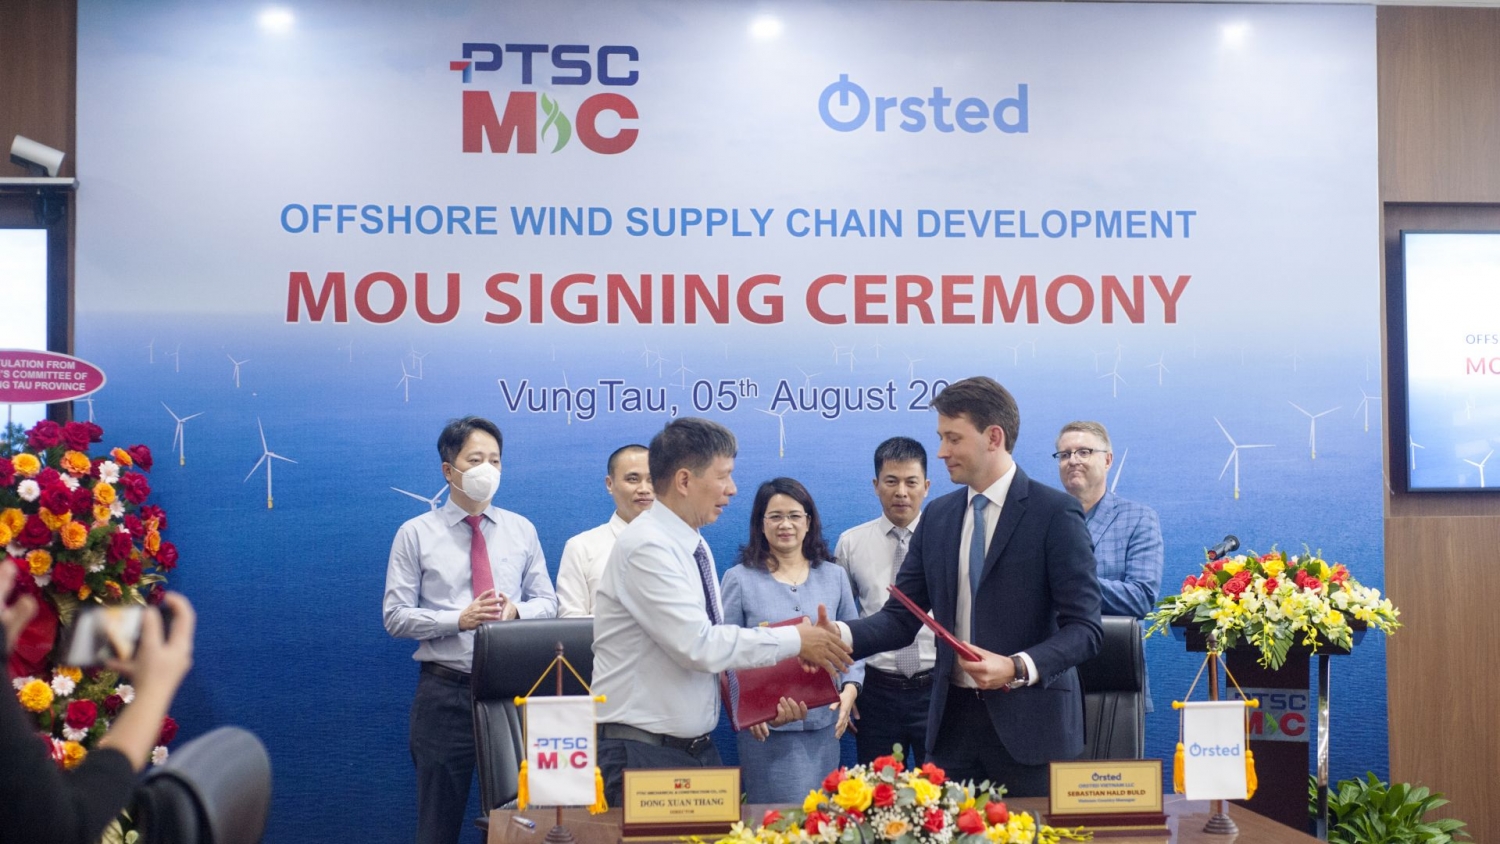 PTSC M&C khởi động quan hệ hợp tác với Ørsted trong các dự án điện gió ngoài khơi